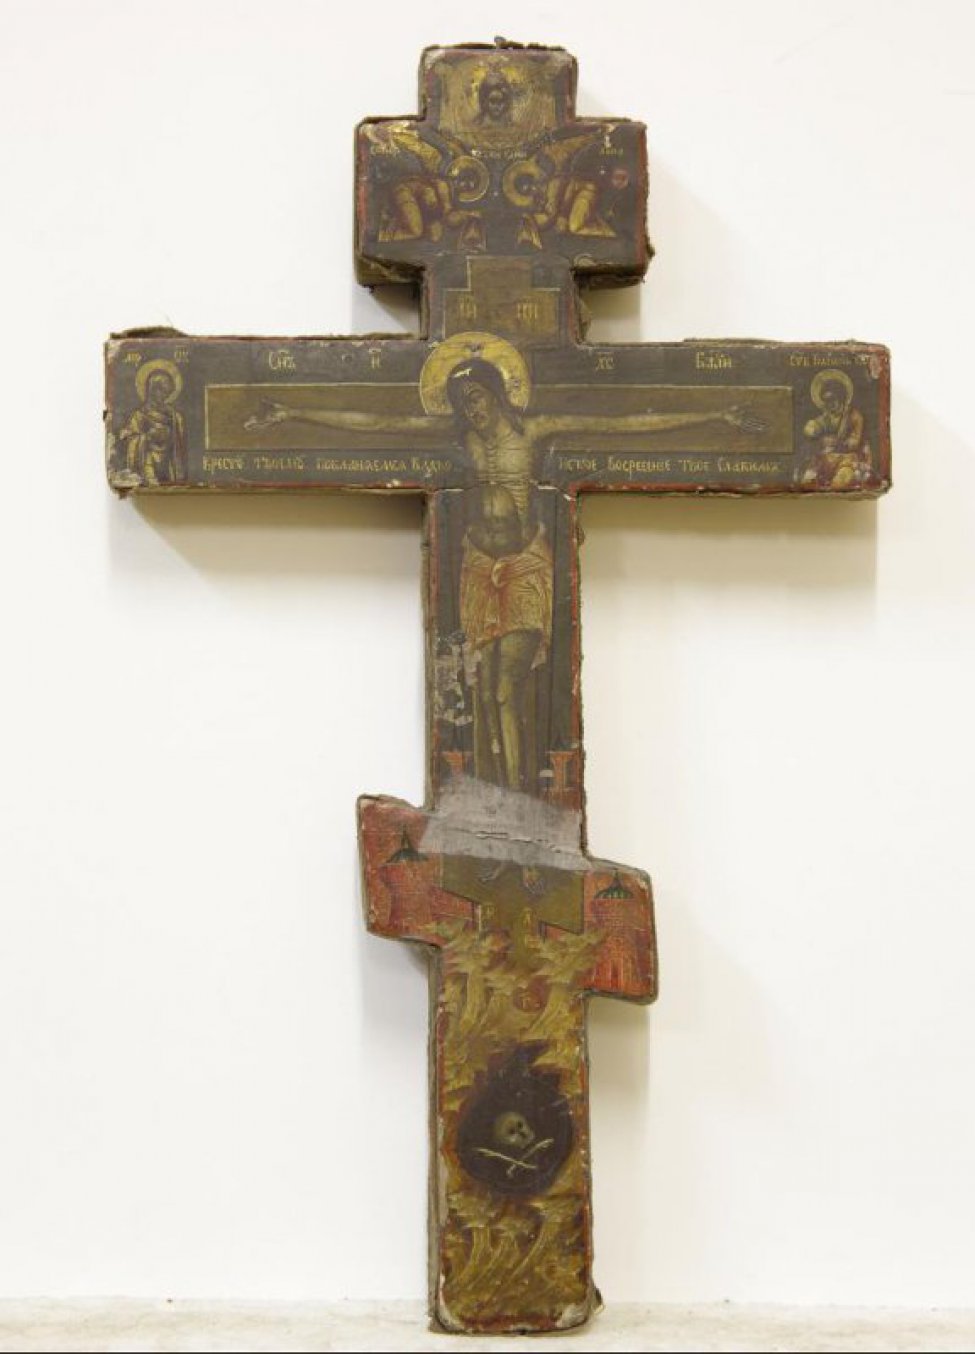 Доска: Крест обит бархатом.
Восьмиконечный крест с изображением распятого Христа на фоне архитектурного пейзажа.